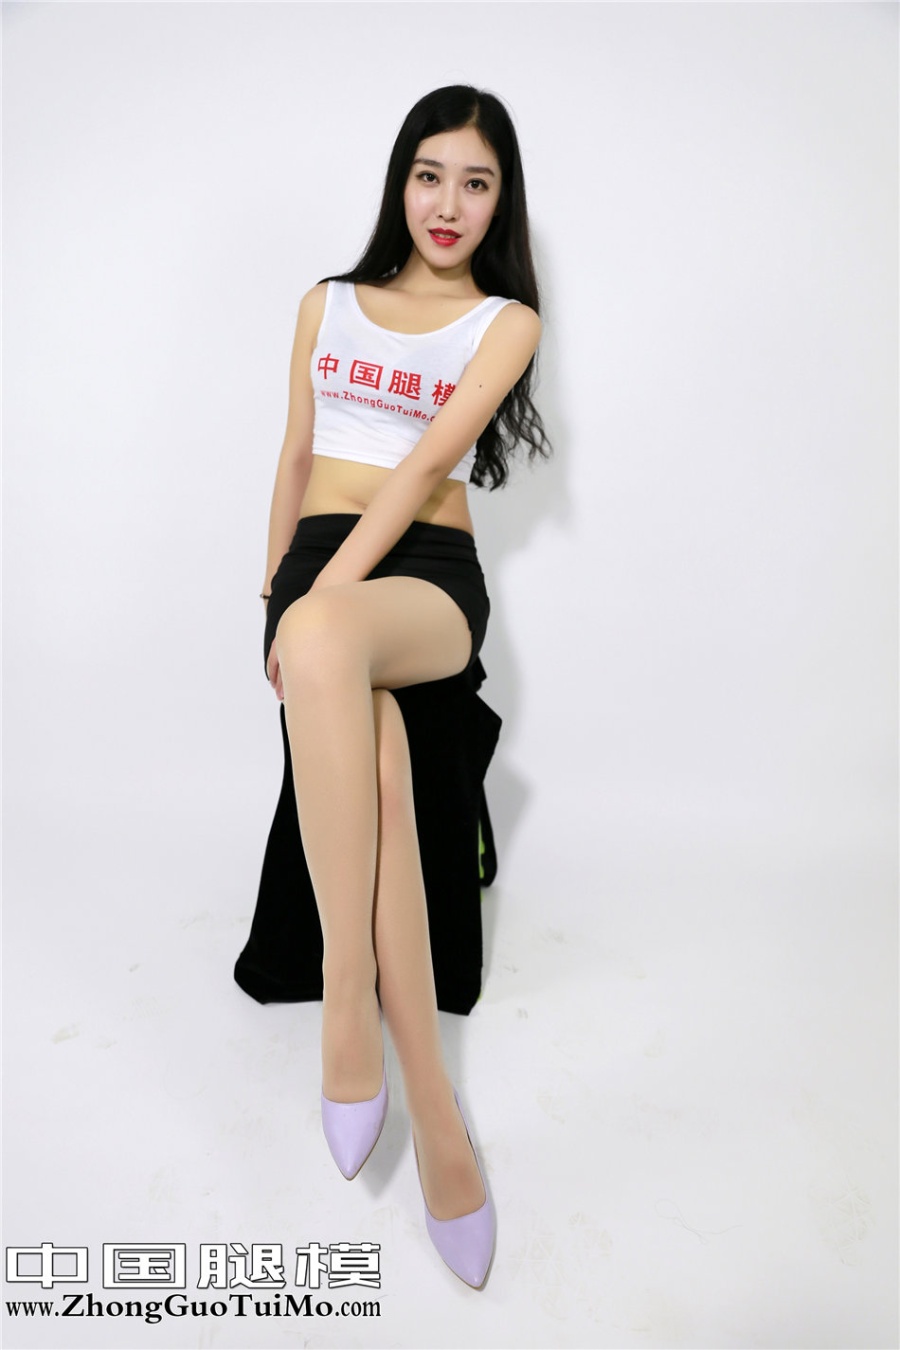 中国腿模美女小琦琦超短裙棚拍写真照片(第5页)